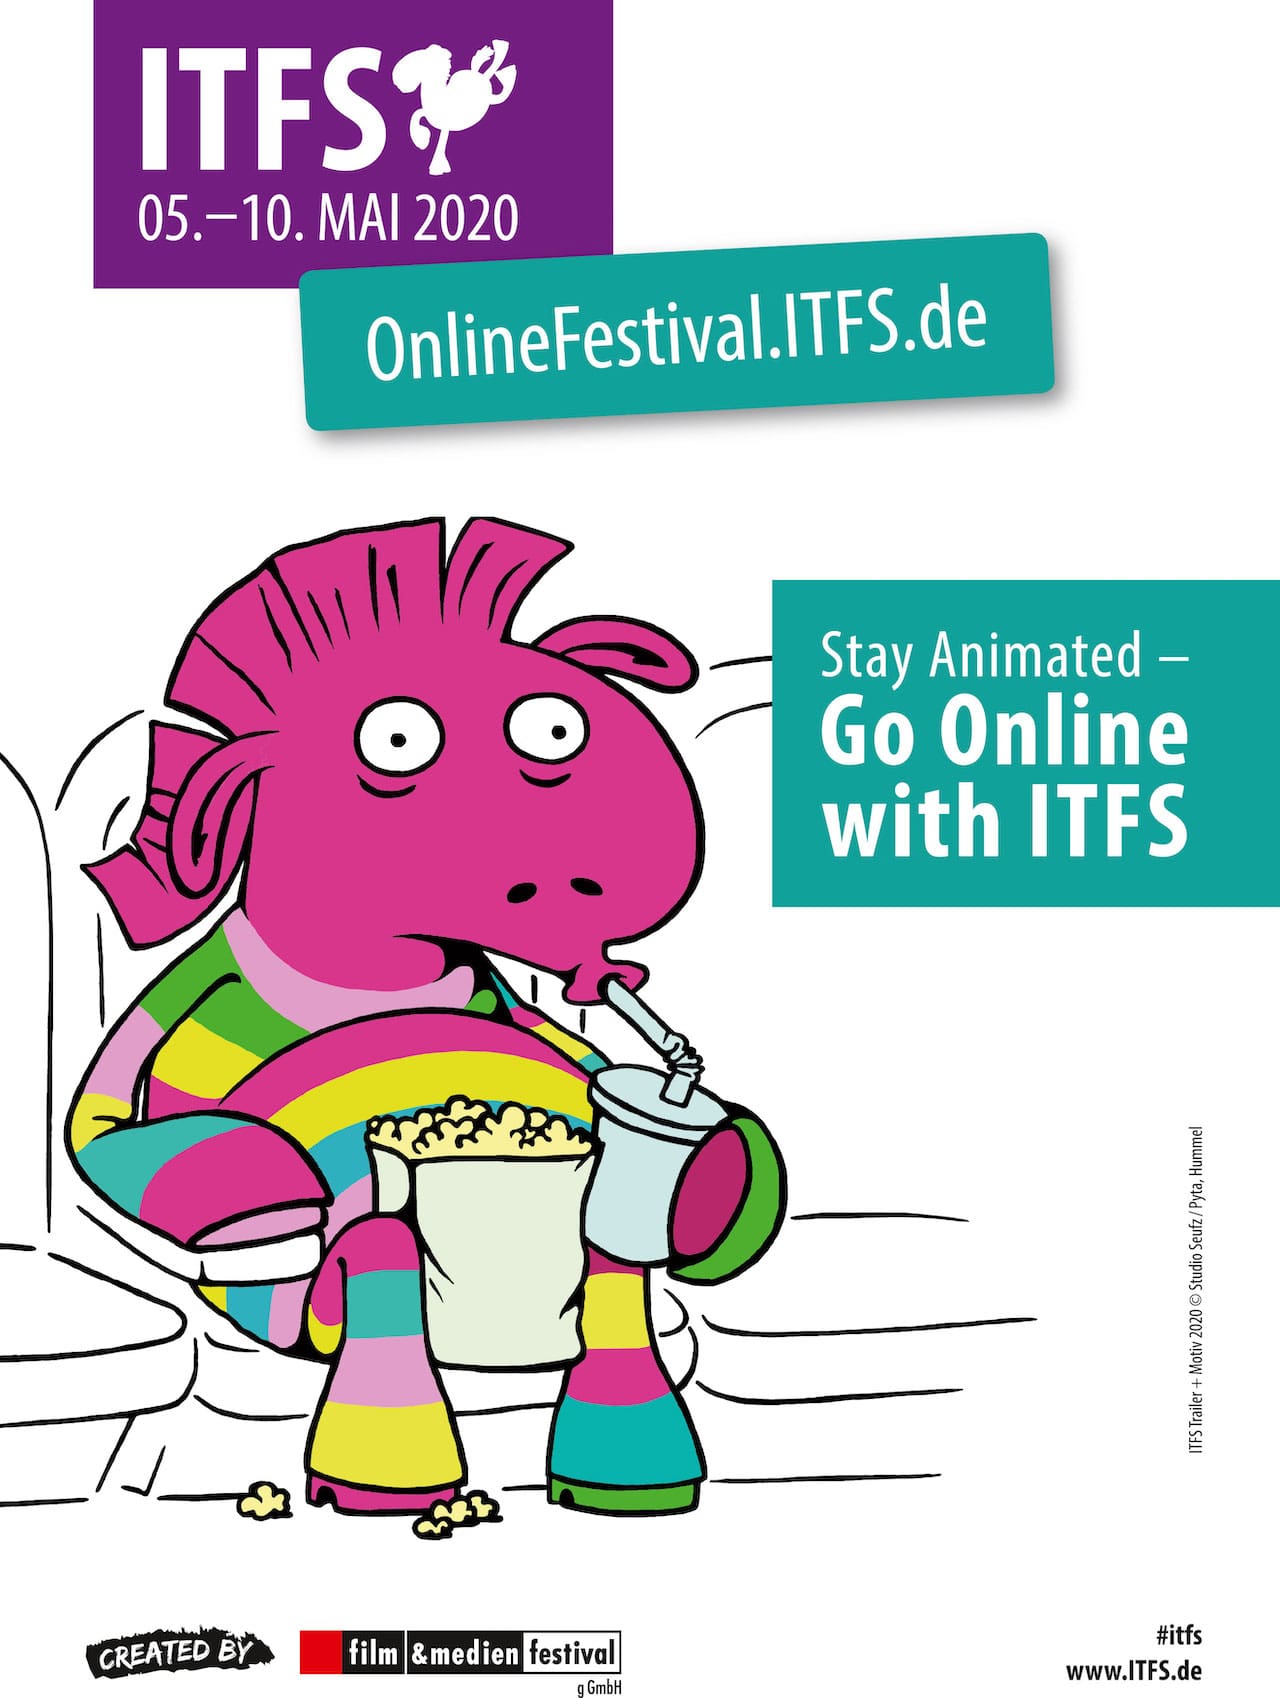 OnlineFestival.ITFS.de